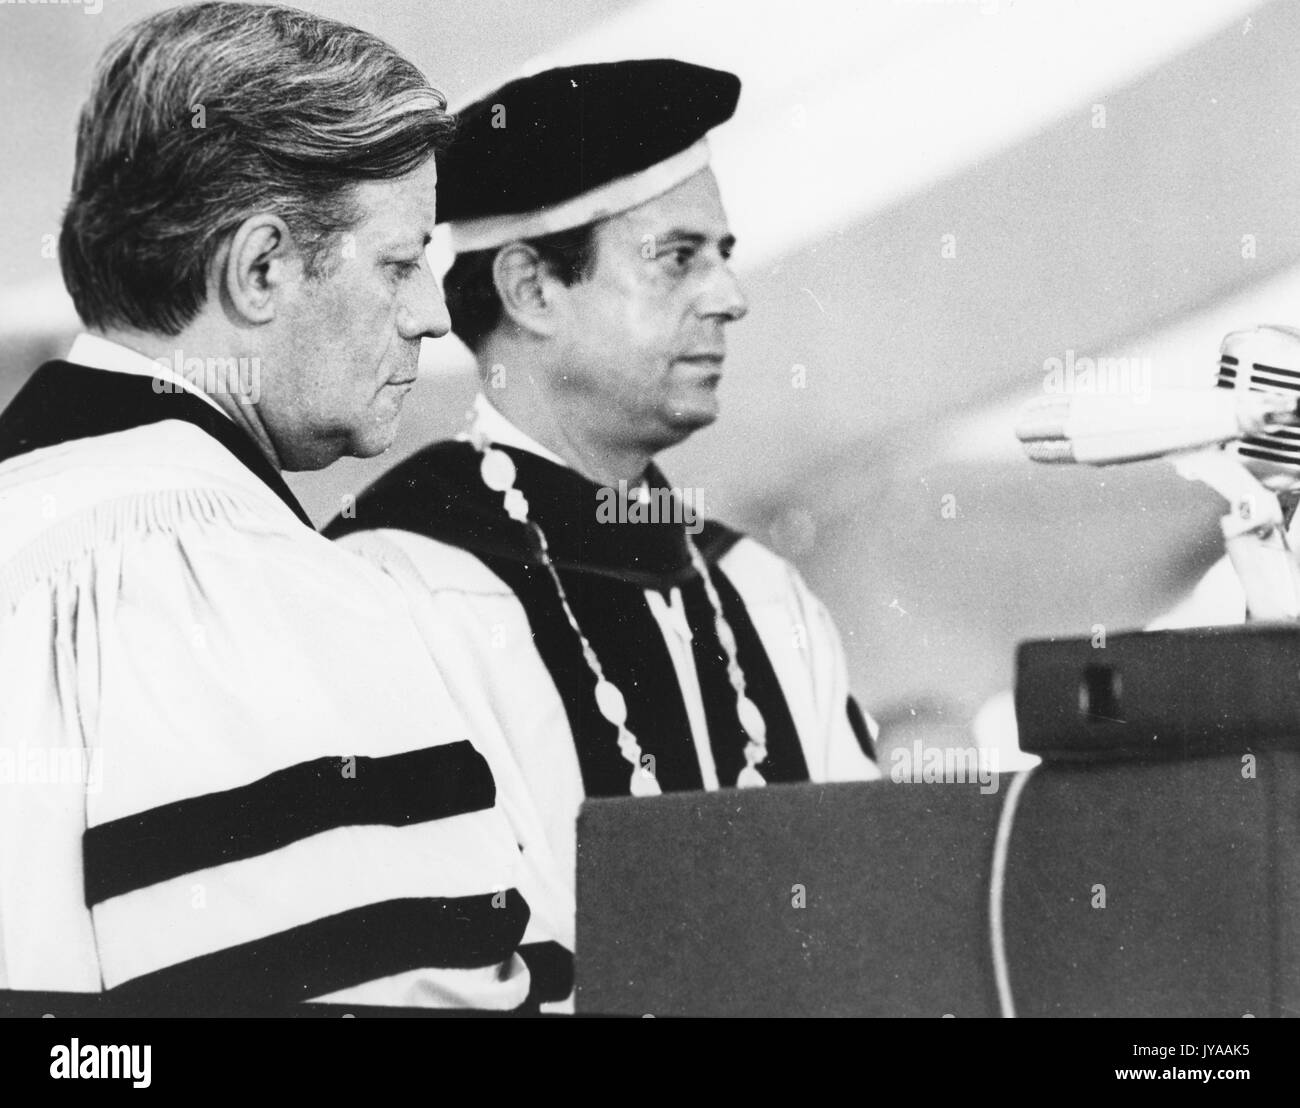 Helmut Schmidt, chancelier de la République fédérale d'Allemagne, qui a accepté une invitation à prendre la parole à la convocation bicentenaire, et Steven Muller, président de l'Université Johns Hopkins, tous deux debout sur le podium à la convocation bicentenaire qui s'est tenue au campus Homewood de l'Université Johns Hopkins, le 16 juillet 1976. Banque D'Images